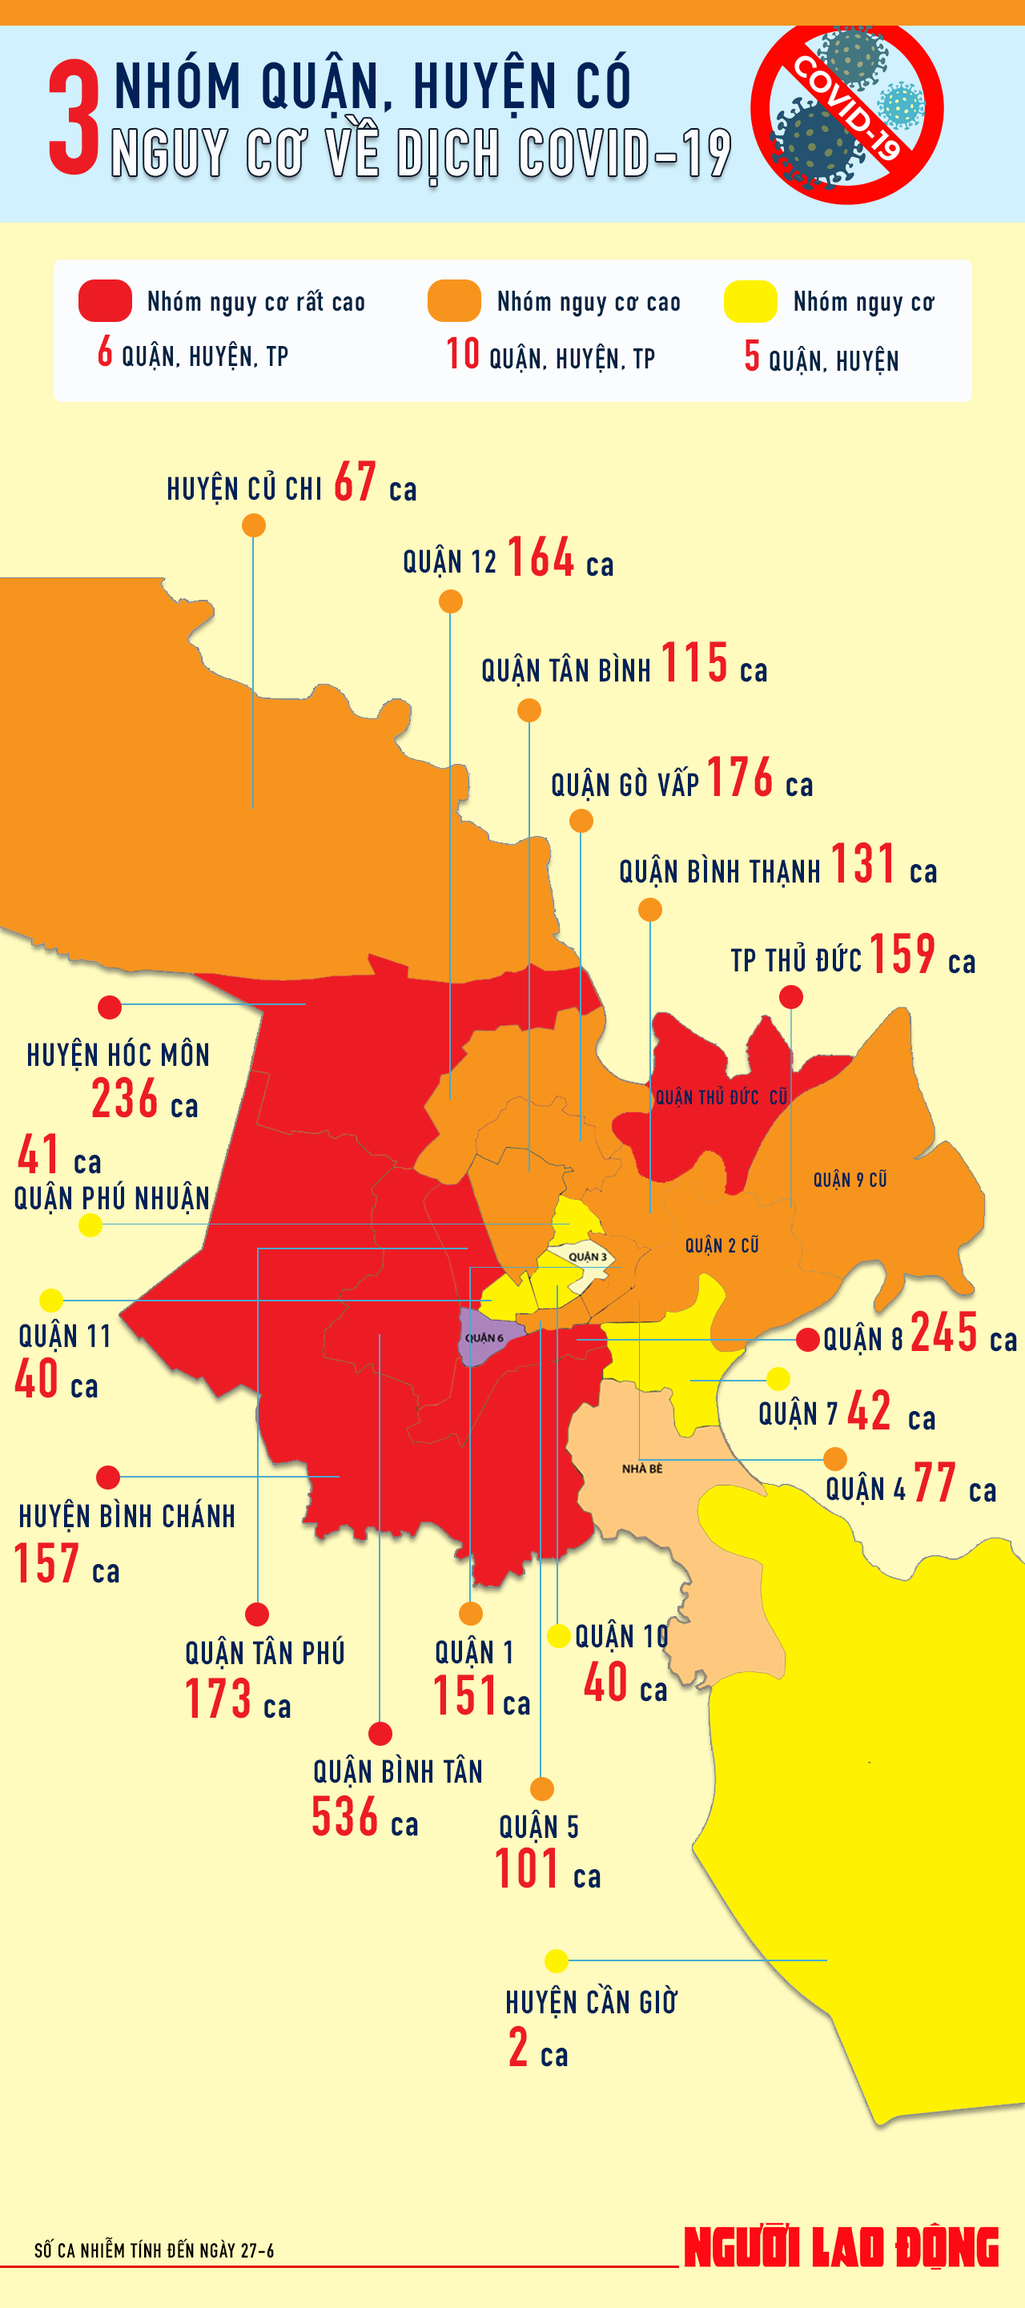 [Infographic] TP HCM có 6 quận, huyện... nguy cơ rất cao về dịch Covid-19 - Ảnh 1.